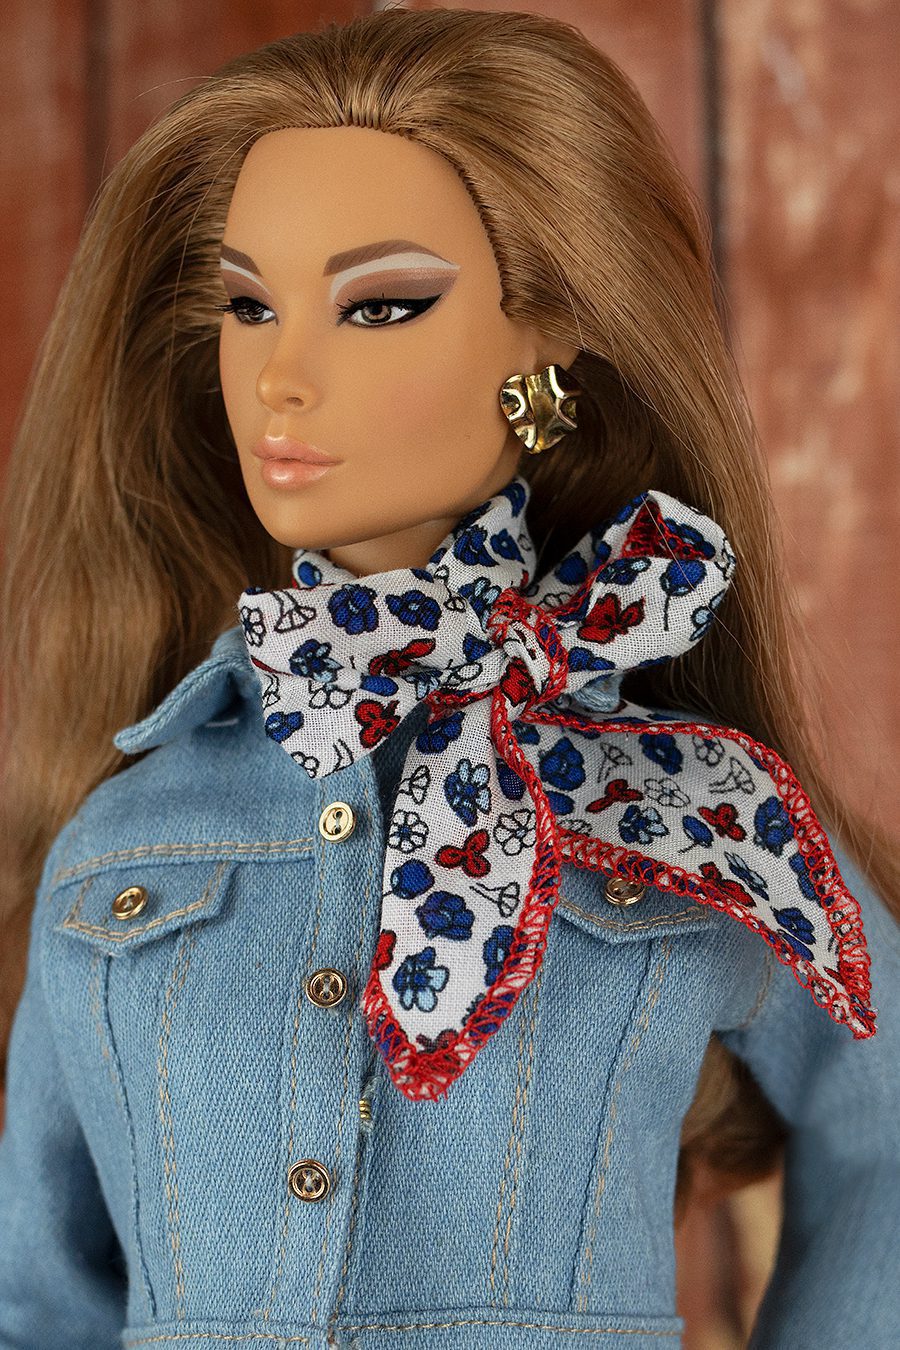 ELENPRIV black roses printed silk headscarf for Fashion Royalty FR2 Barbie dolls